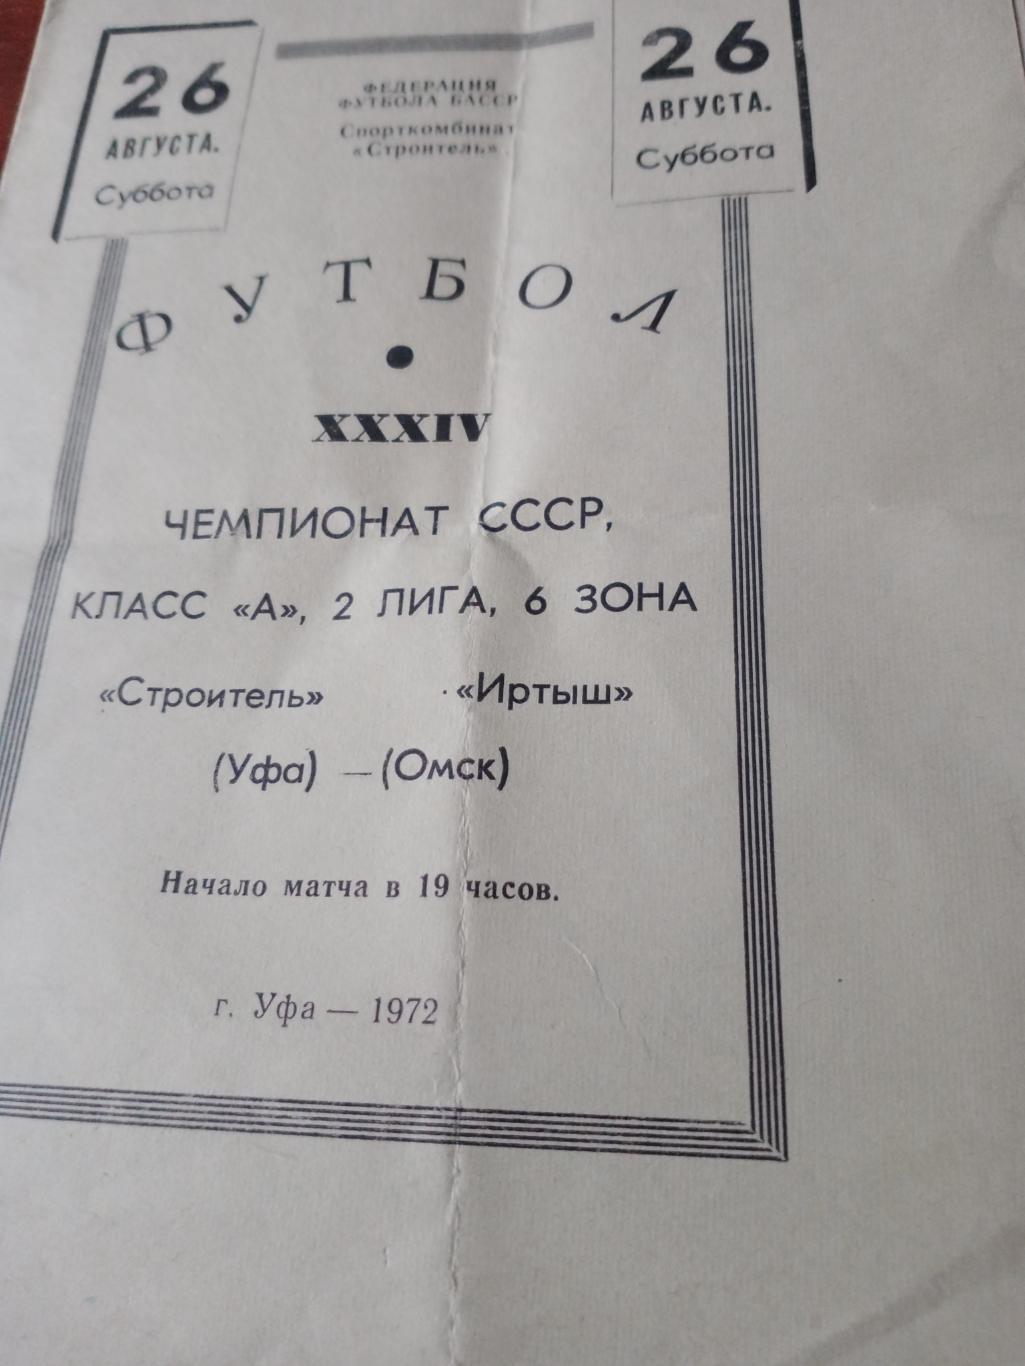 Строитель Уфа - Иртыш Омск. 26 августа 1972 год